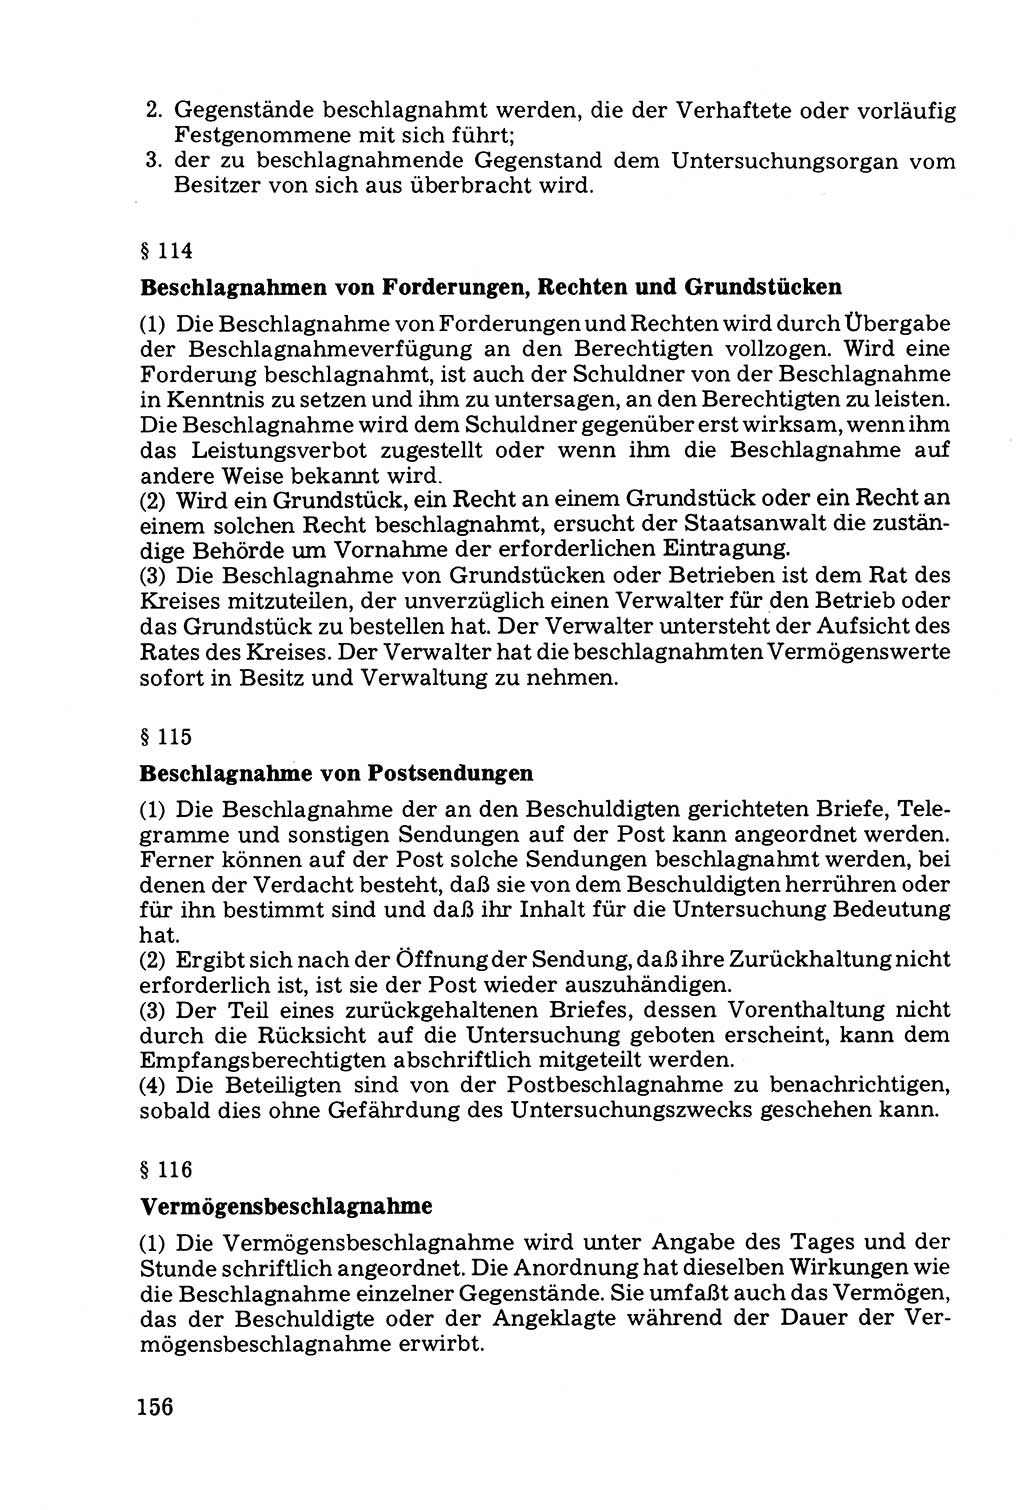 Die Durchsuchung und die Beschlagnahme [Deutsche Demokratische Republik (DDR)] 1979, Seite 156 (Durchs. Beschl. DDR 1979, S. 156)